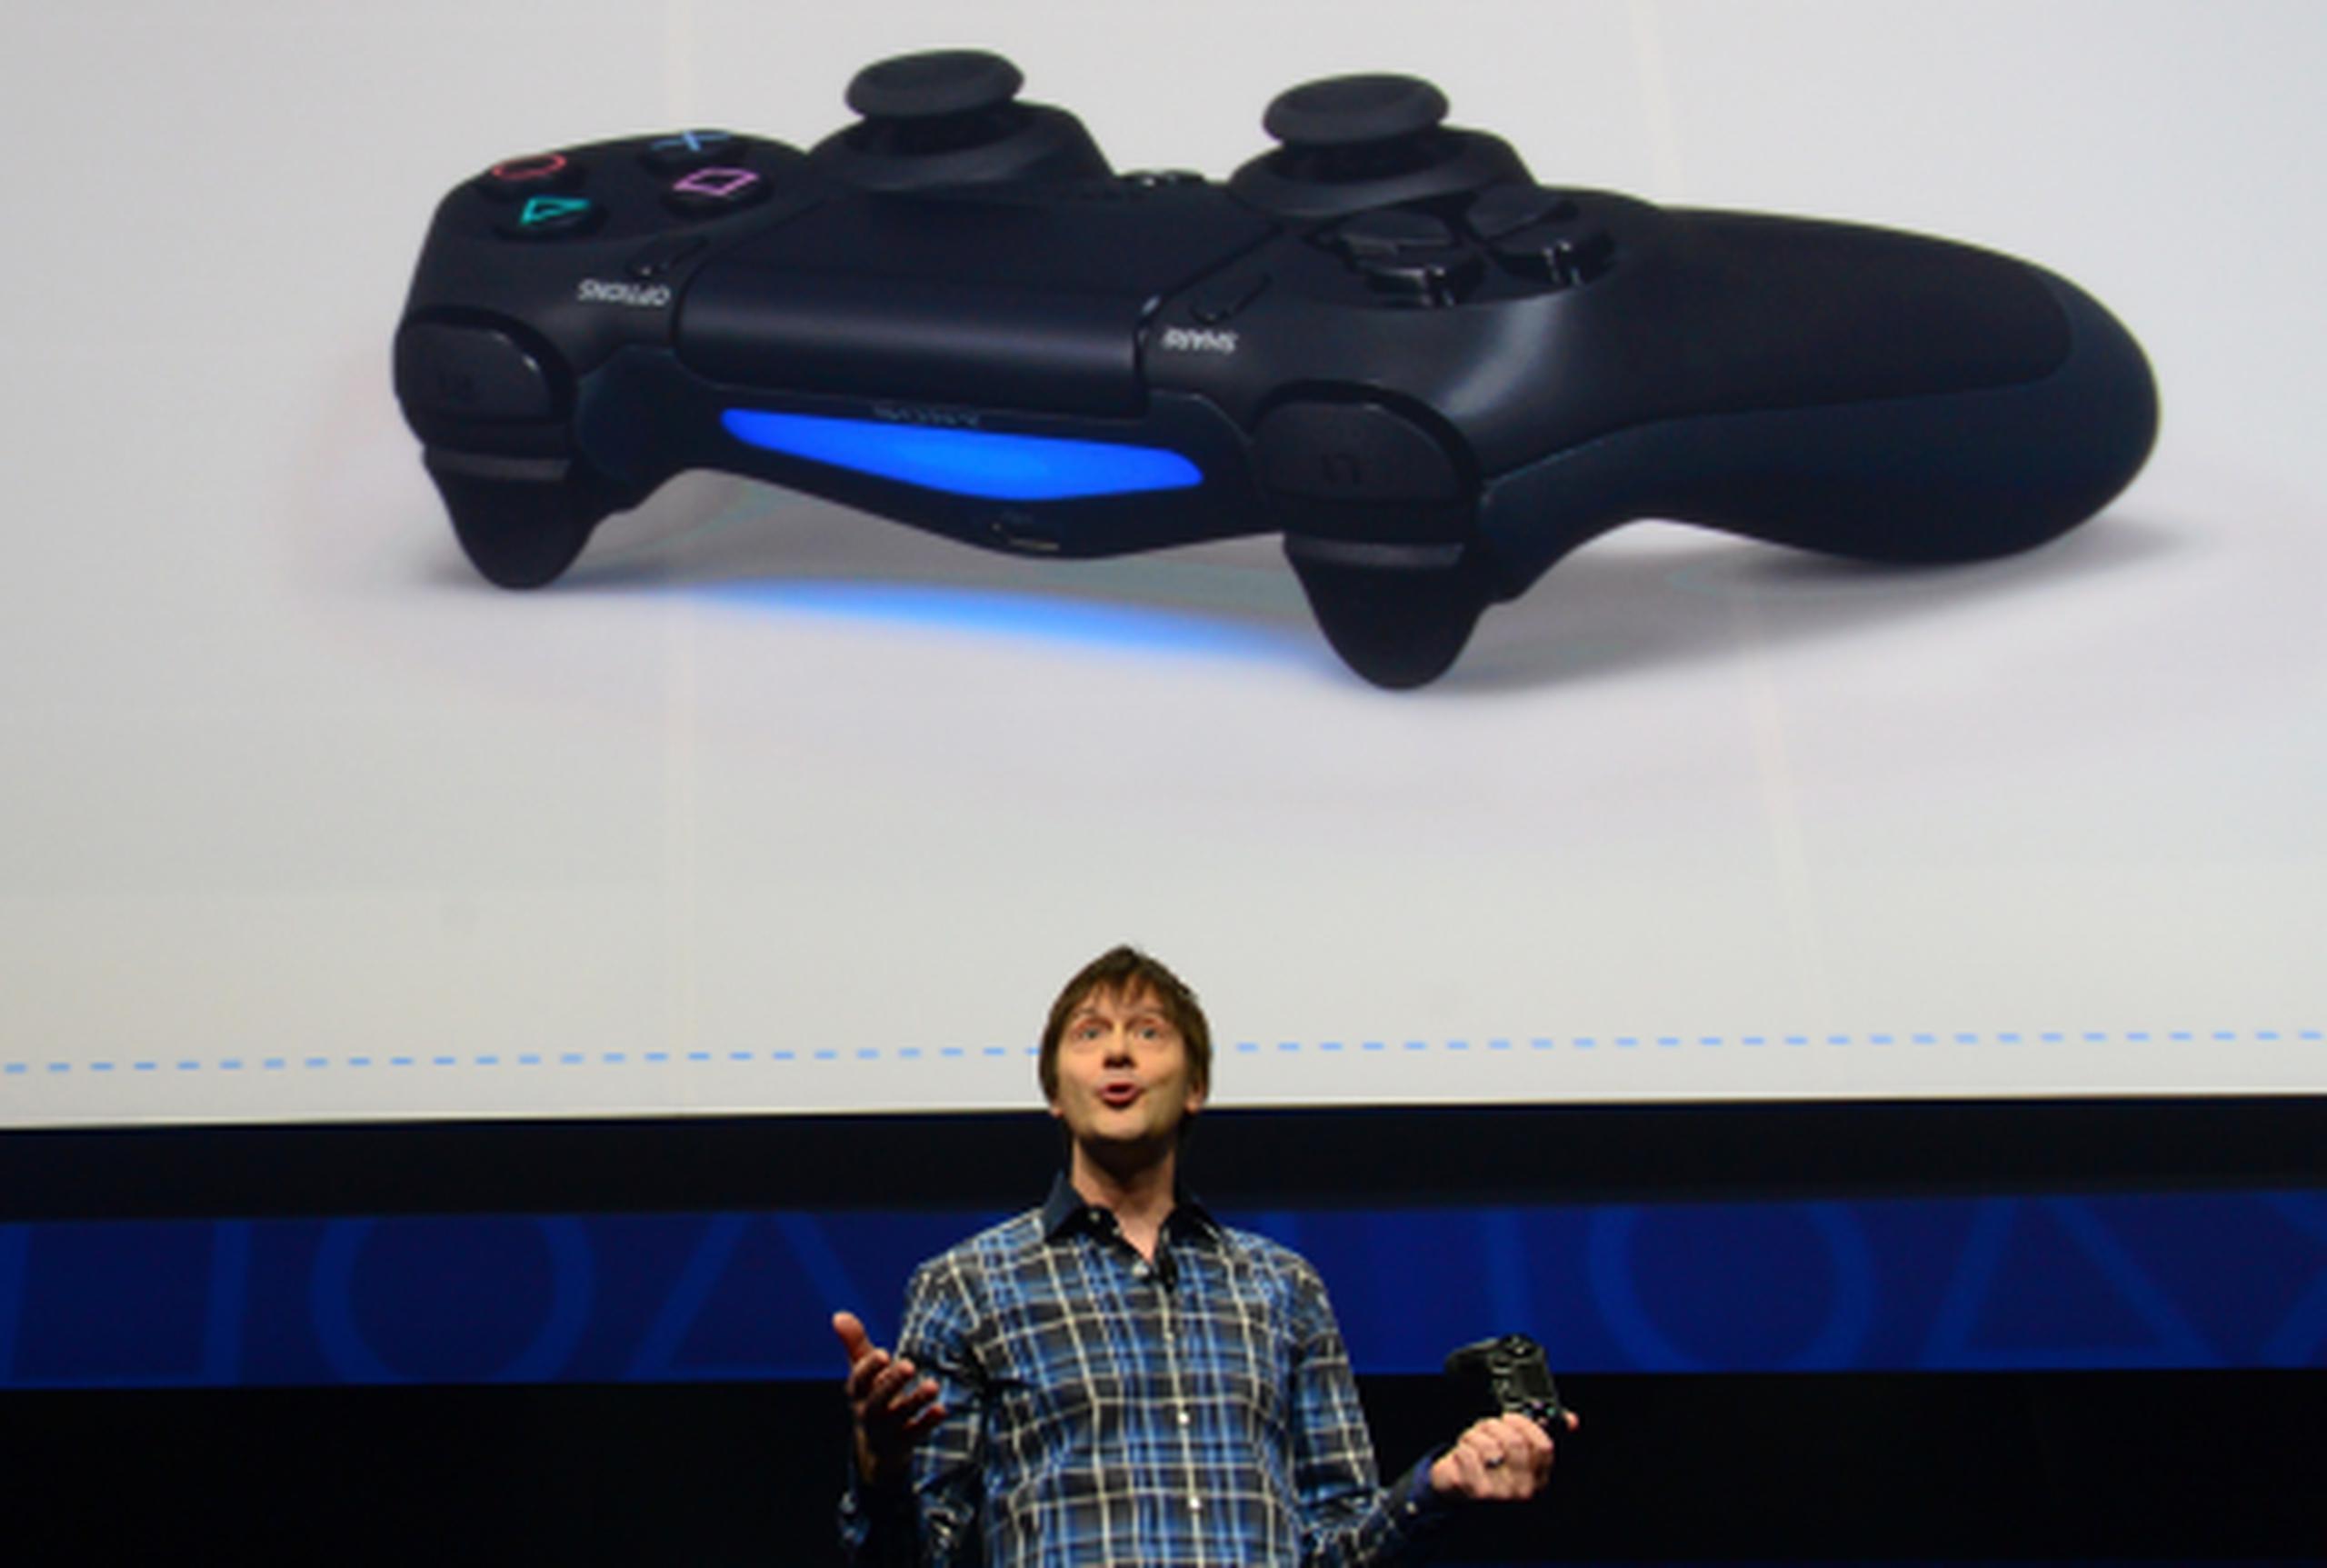 Entre las novedades del PS4, hay un control mejorado que incluye una superficie sensible al tacto y un botón para "compartir". (AFP/Emmanuel Dunand)